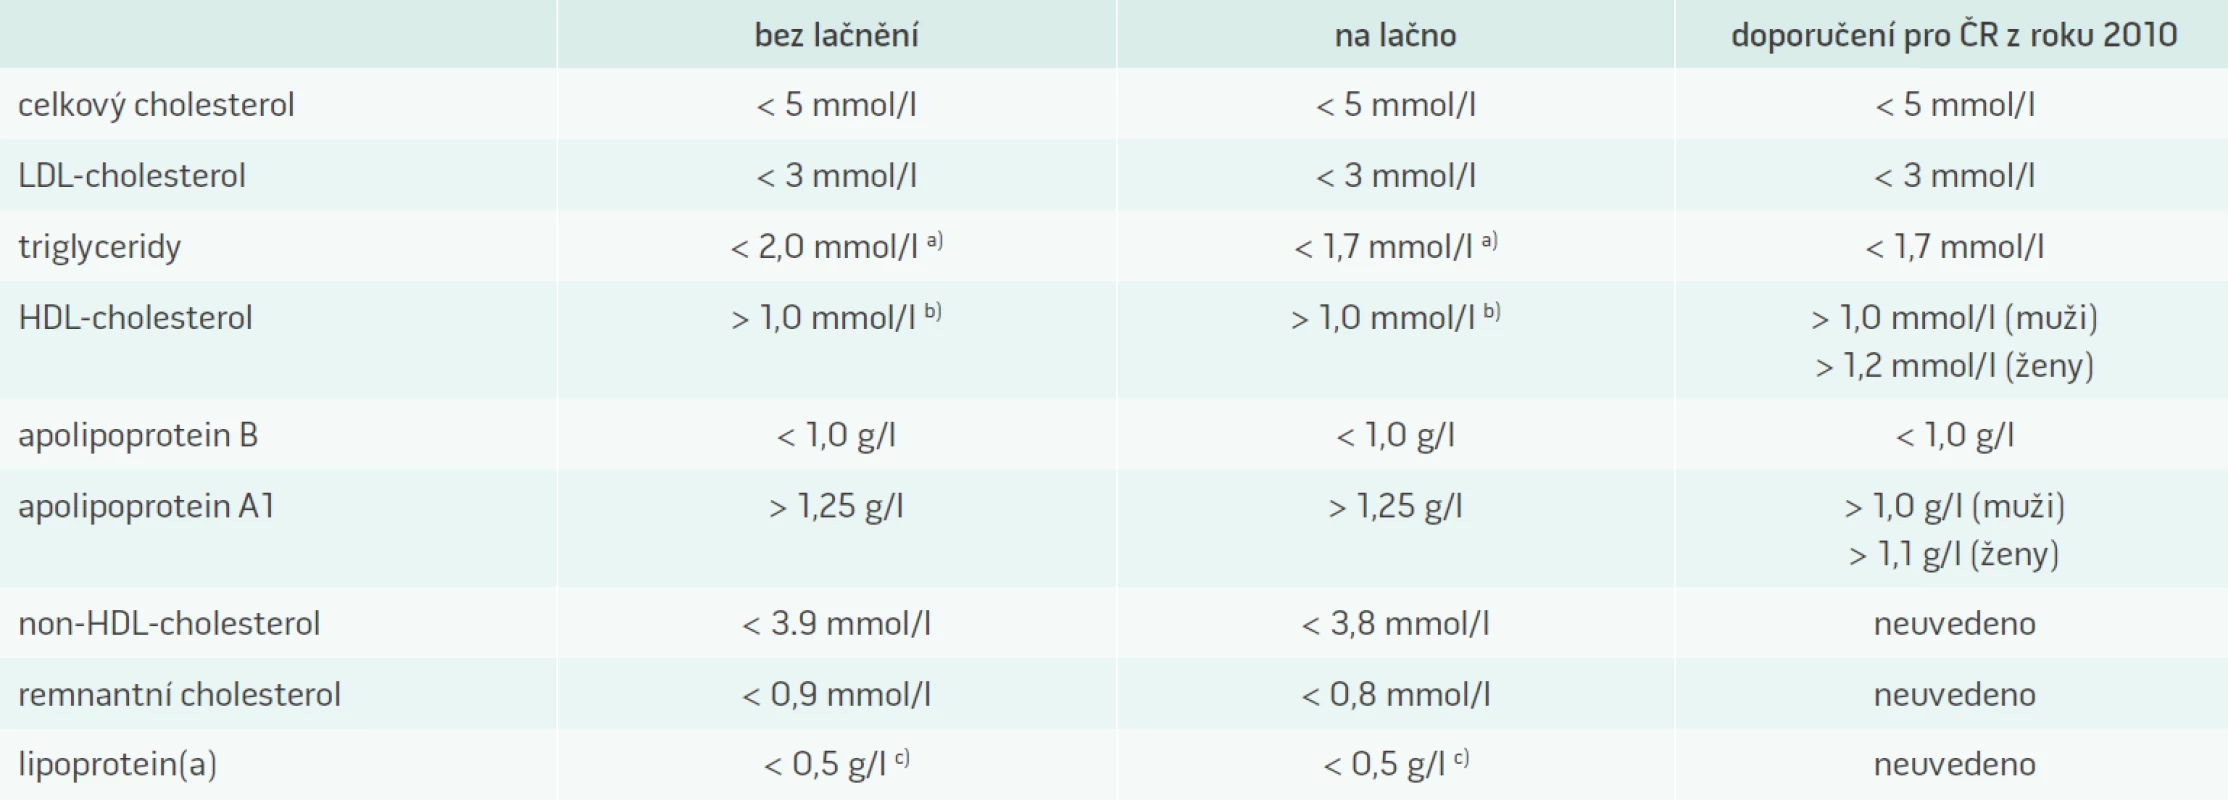 Doporučené „cut-points“ hodnoty krevních lipidů a lipoproteinů